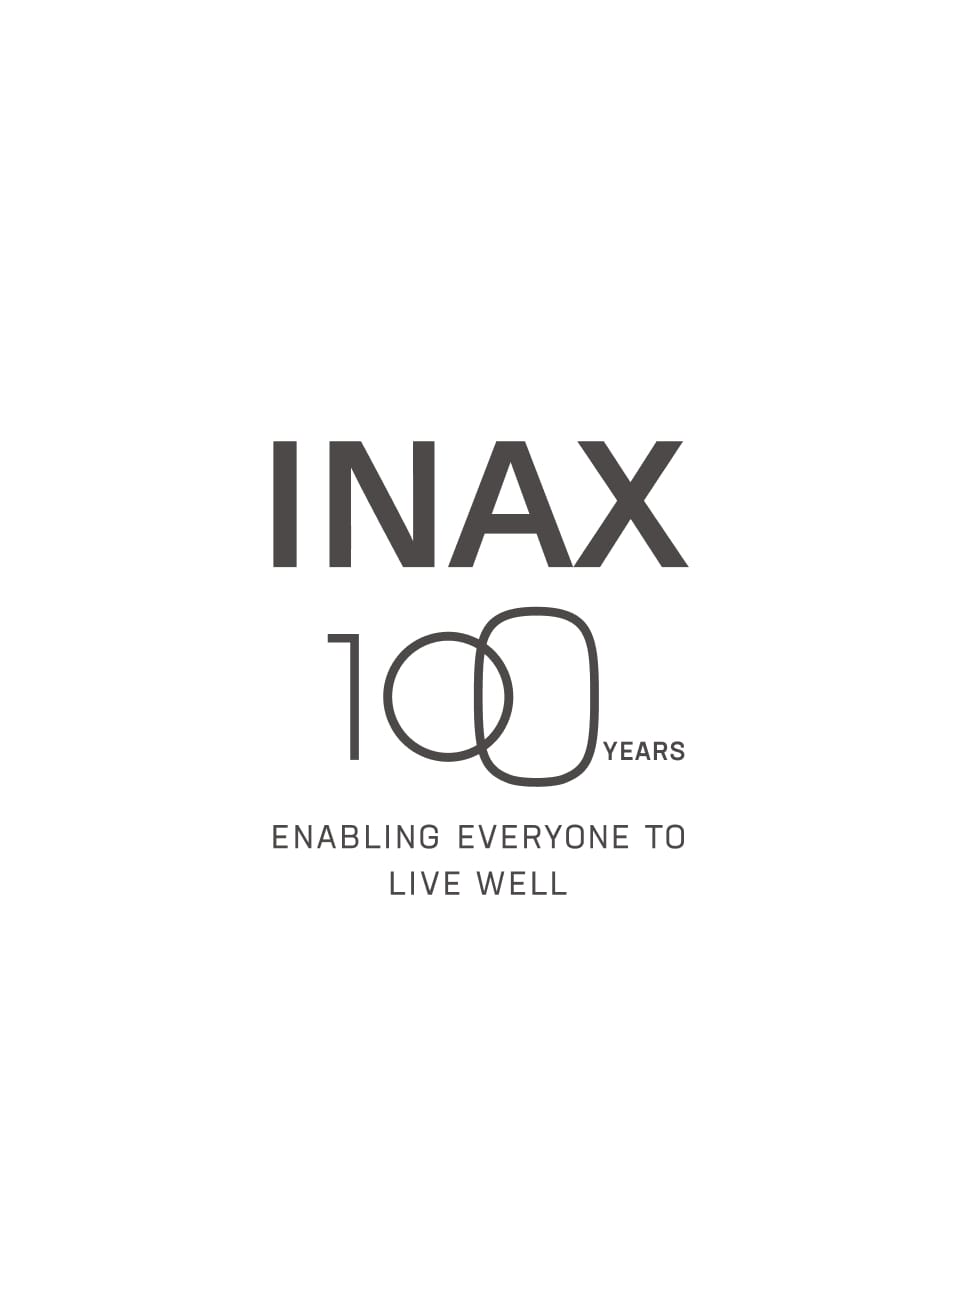 Kỉ niệm 100 năm INAX